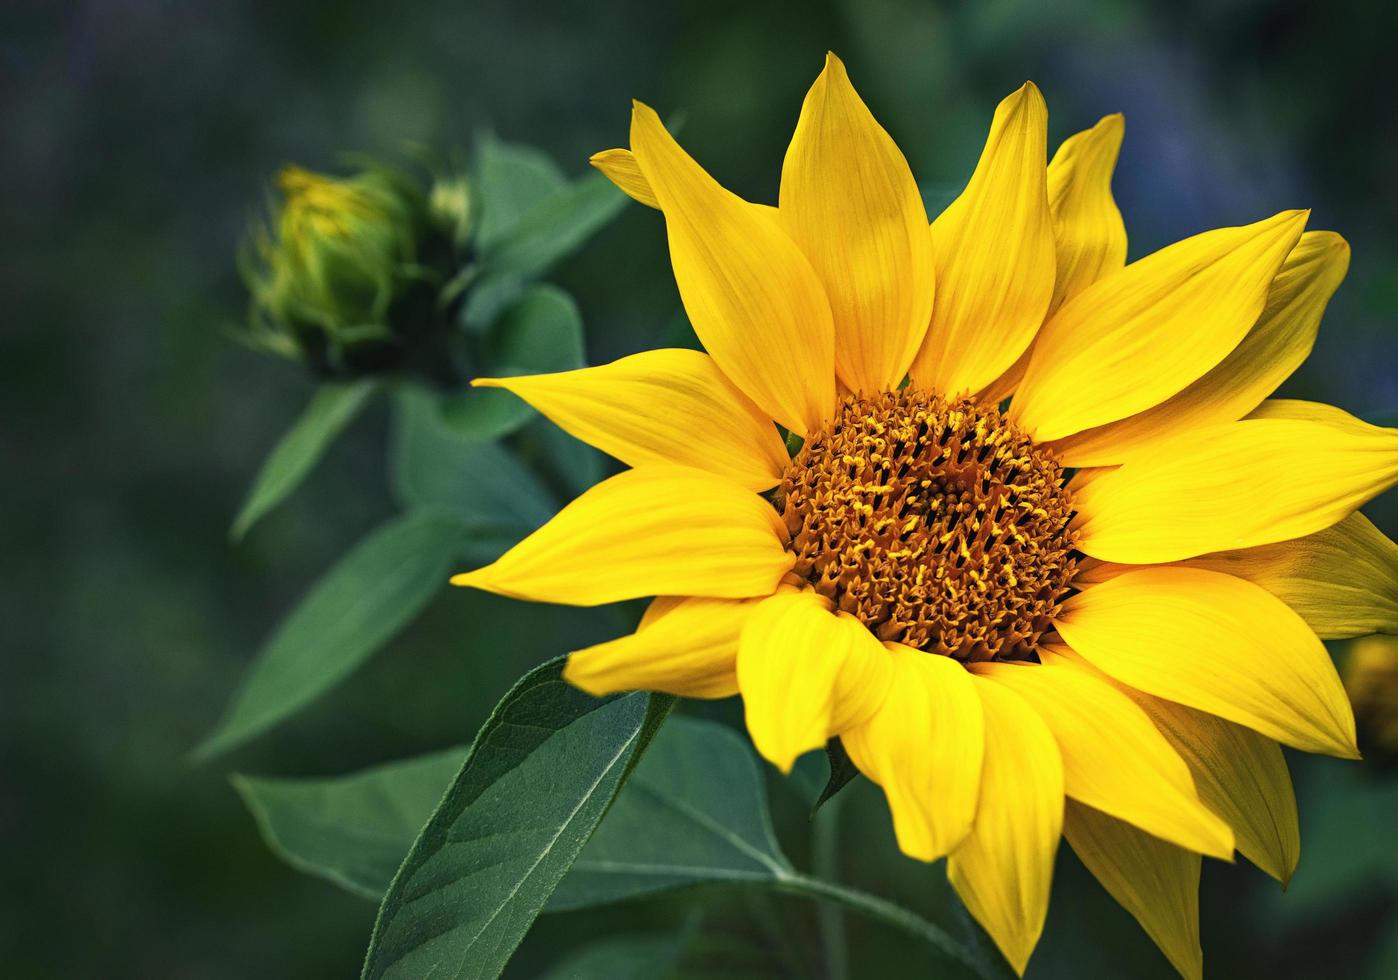 Bright yellow sunflower photo